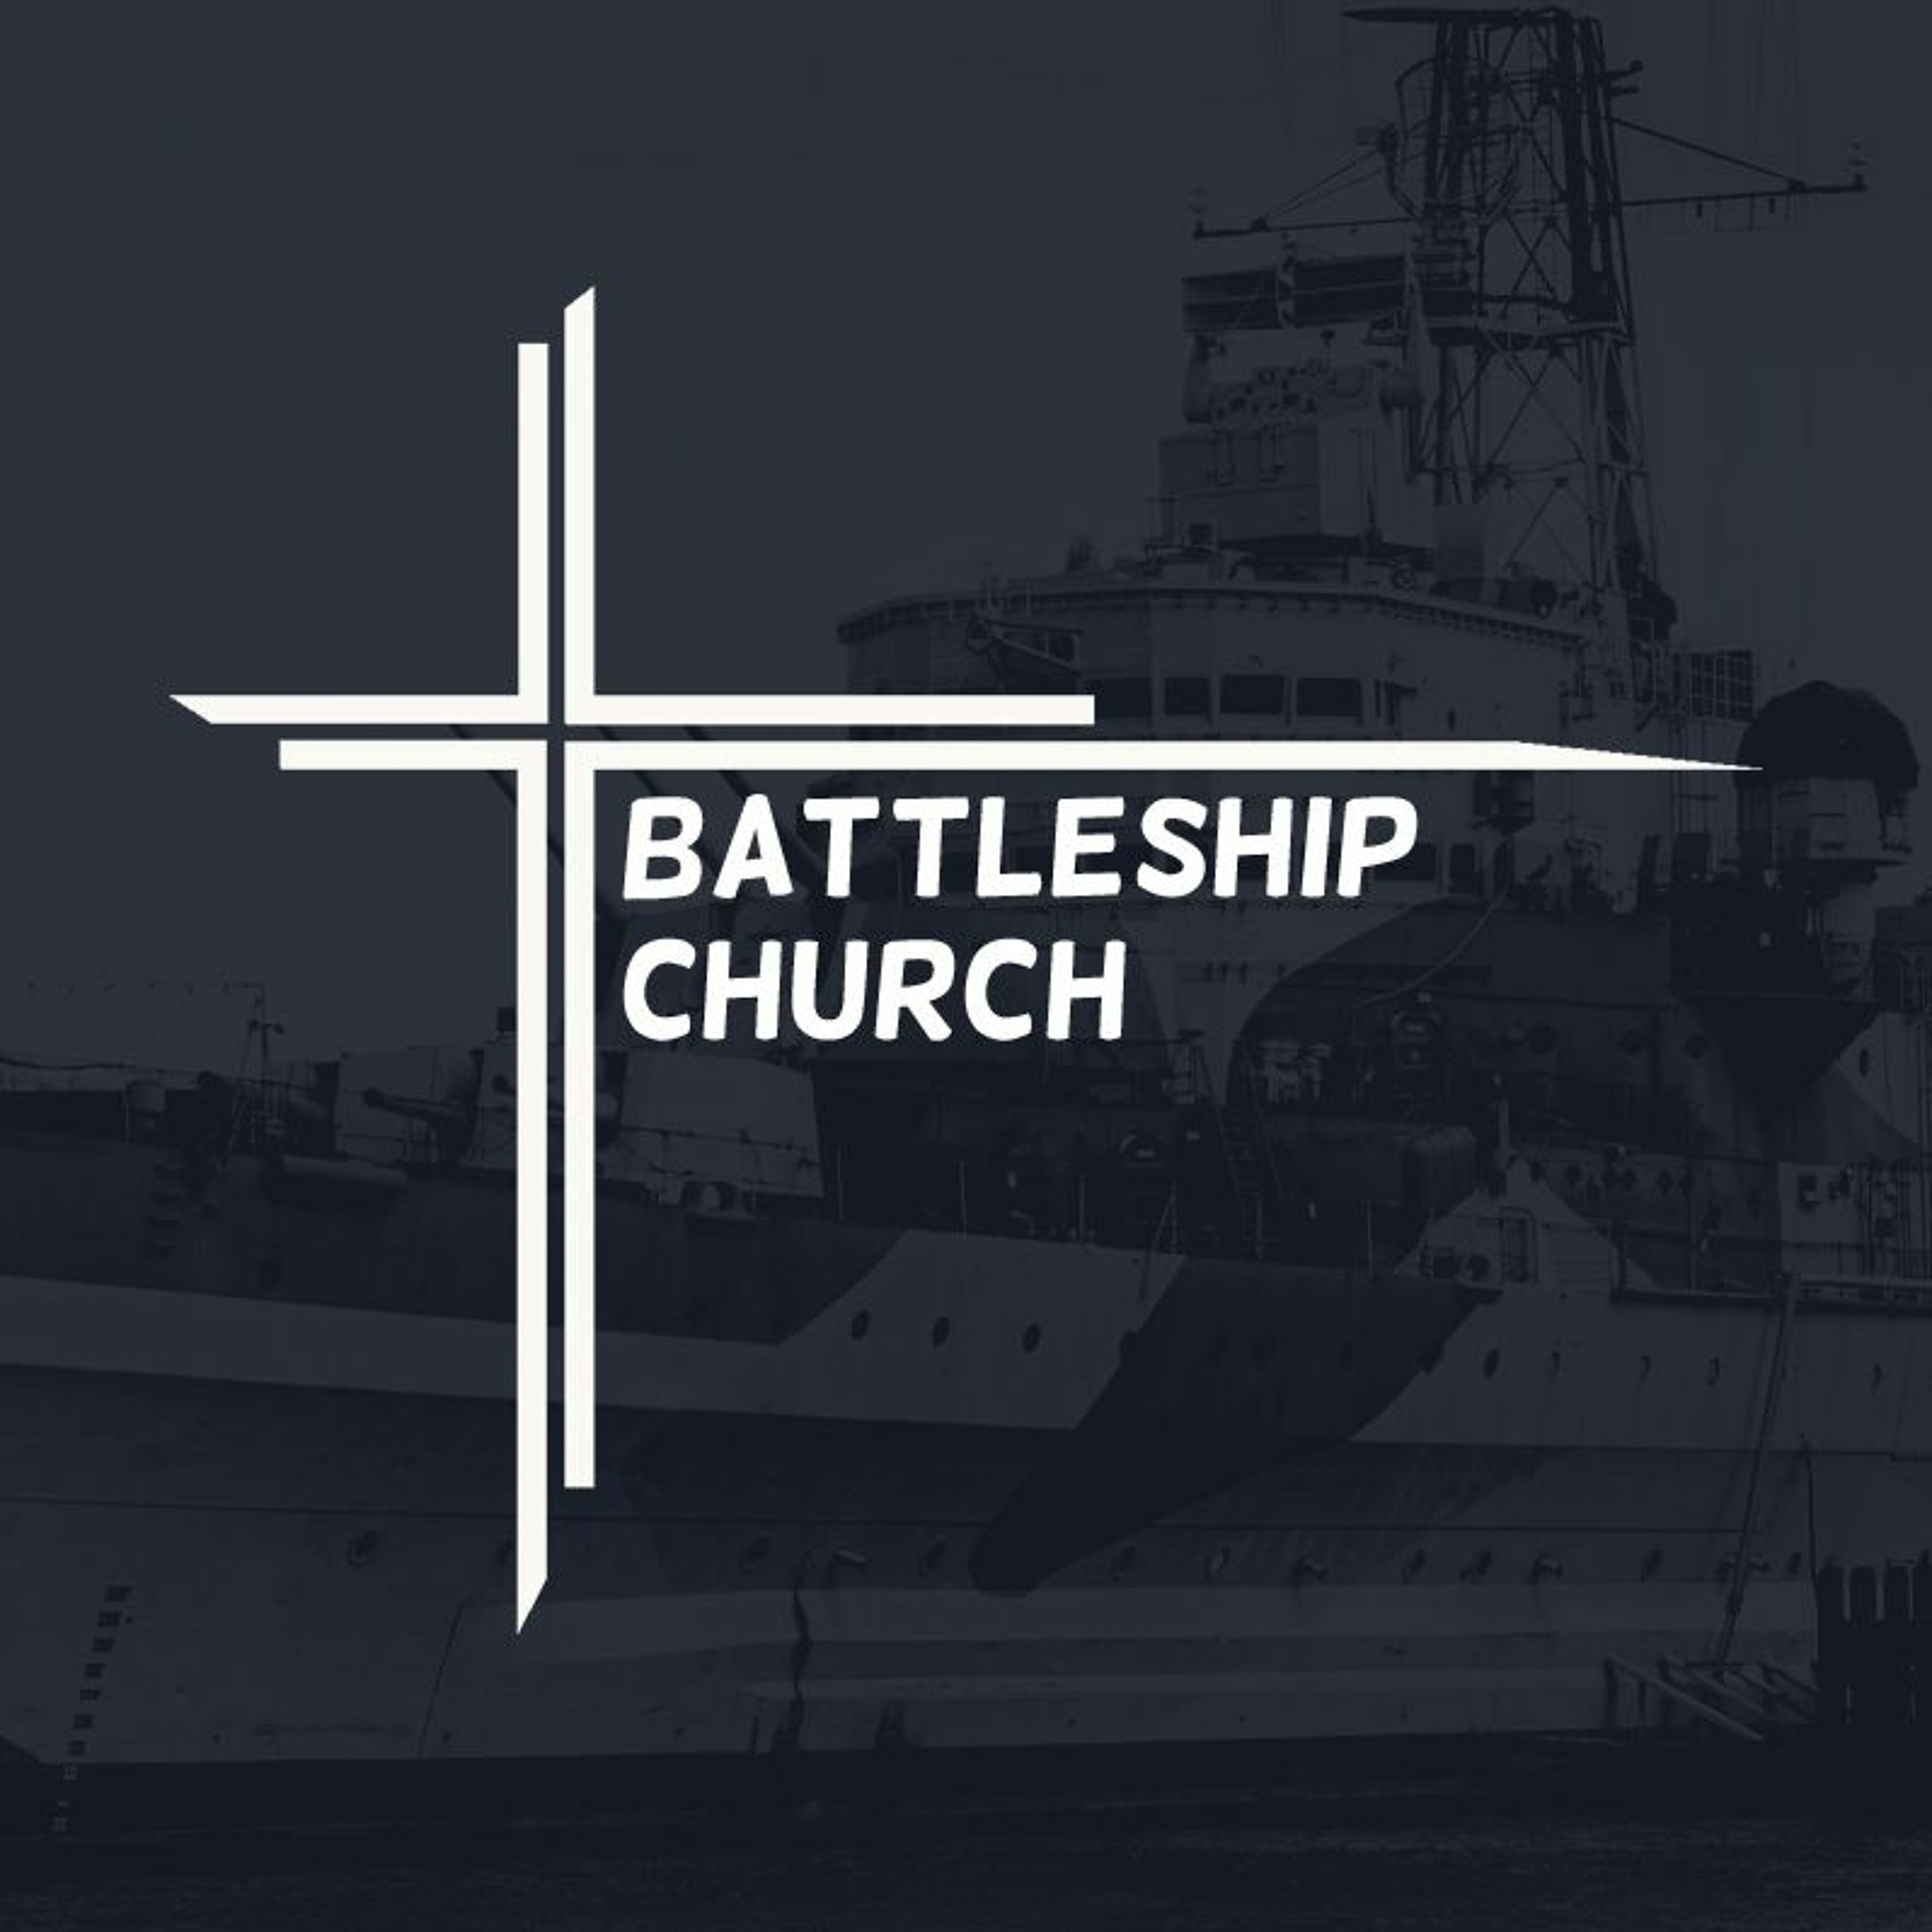 Battleship church | Partnership